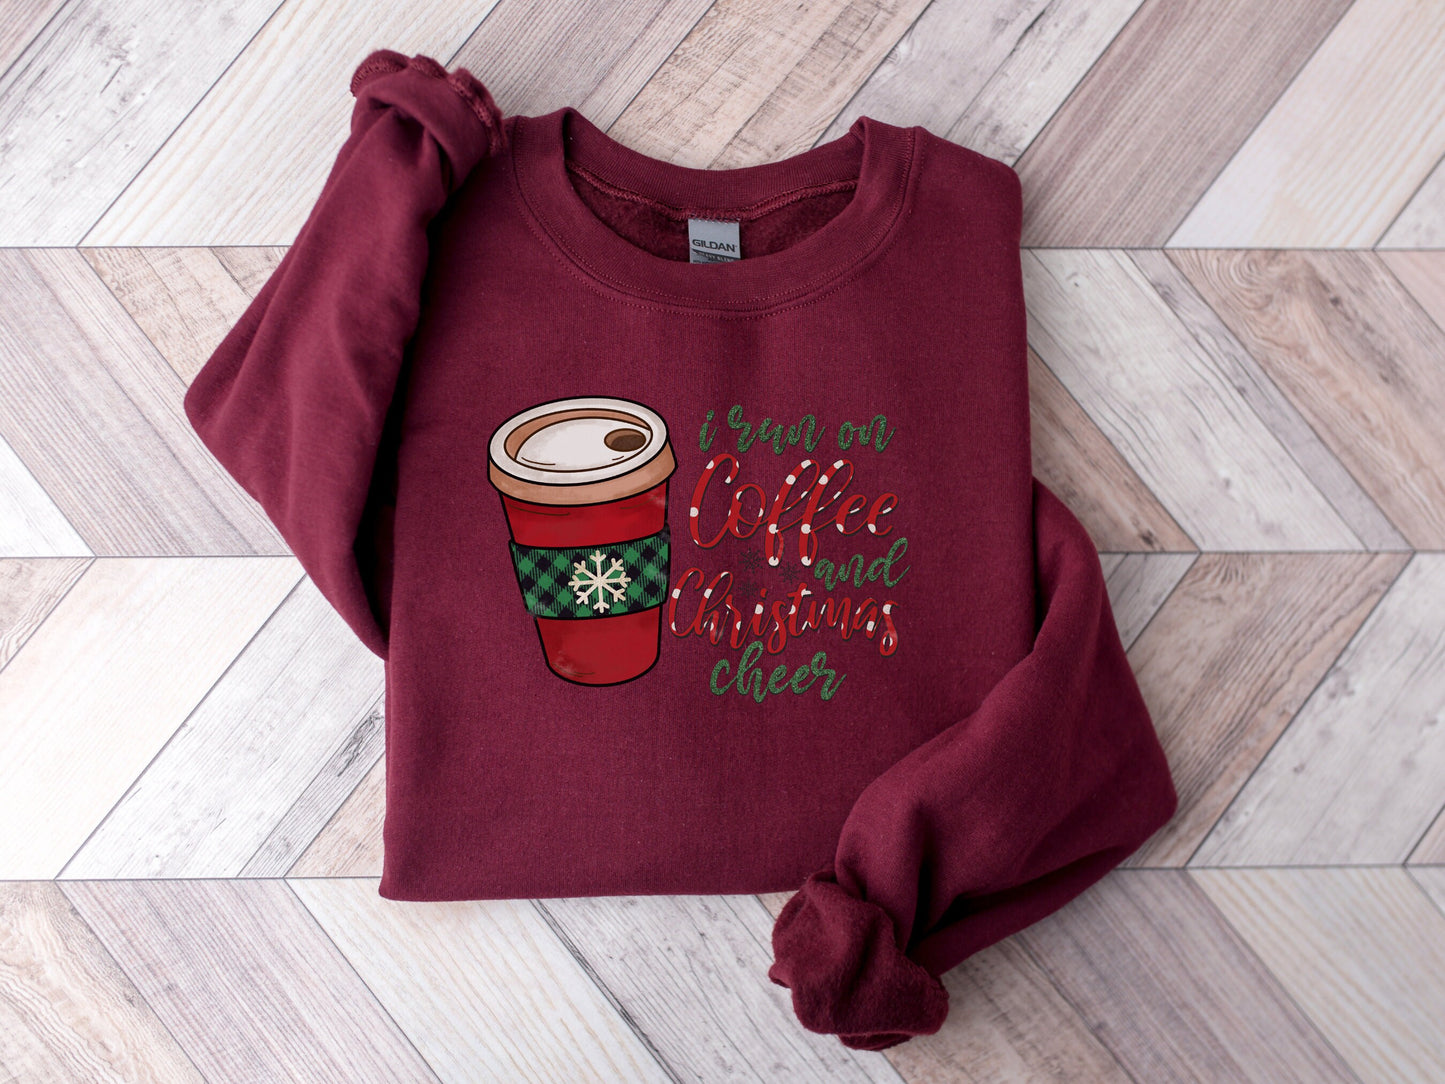 Christmas Coffee Sweatshirt, Christmas Women's Sweatshirt, Christmas Sweater, Christmas Crewneck, Winter Sweatshirt, Holiday Sweatshirt